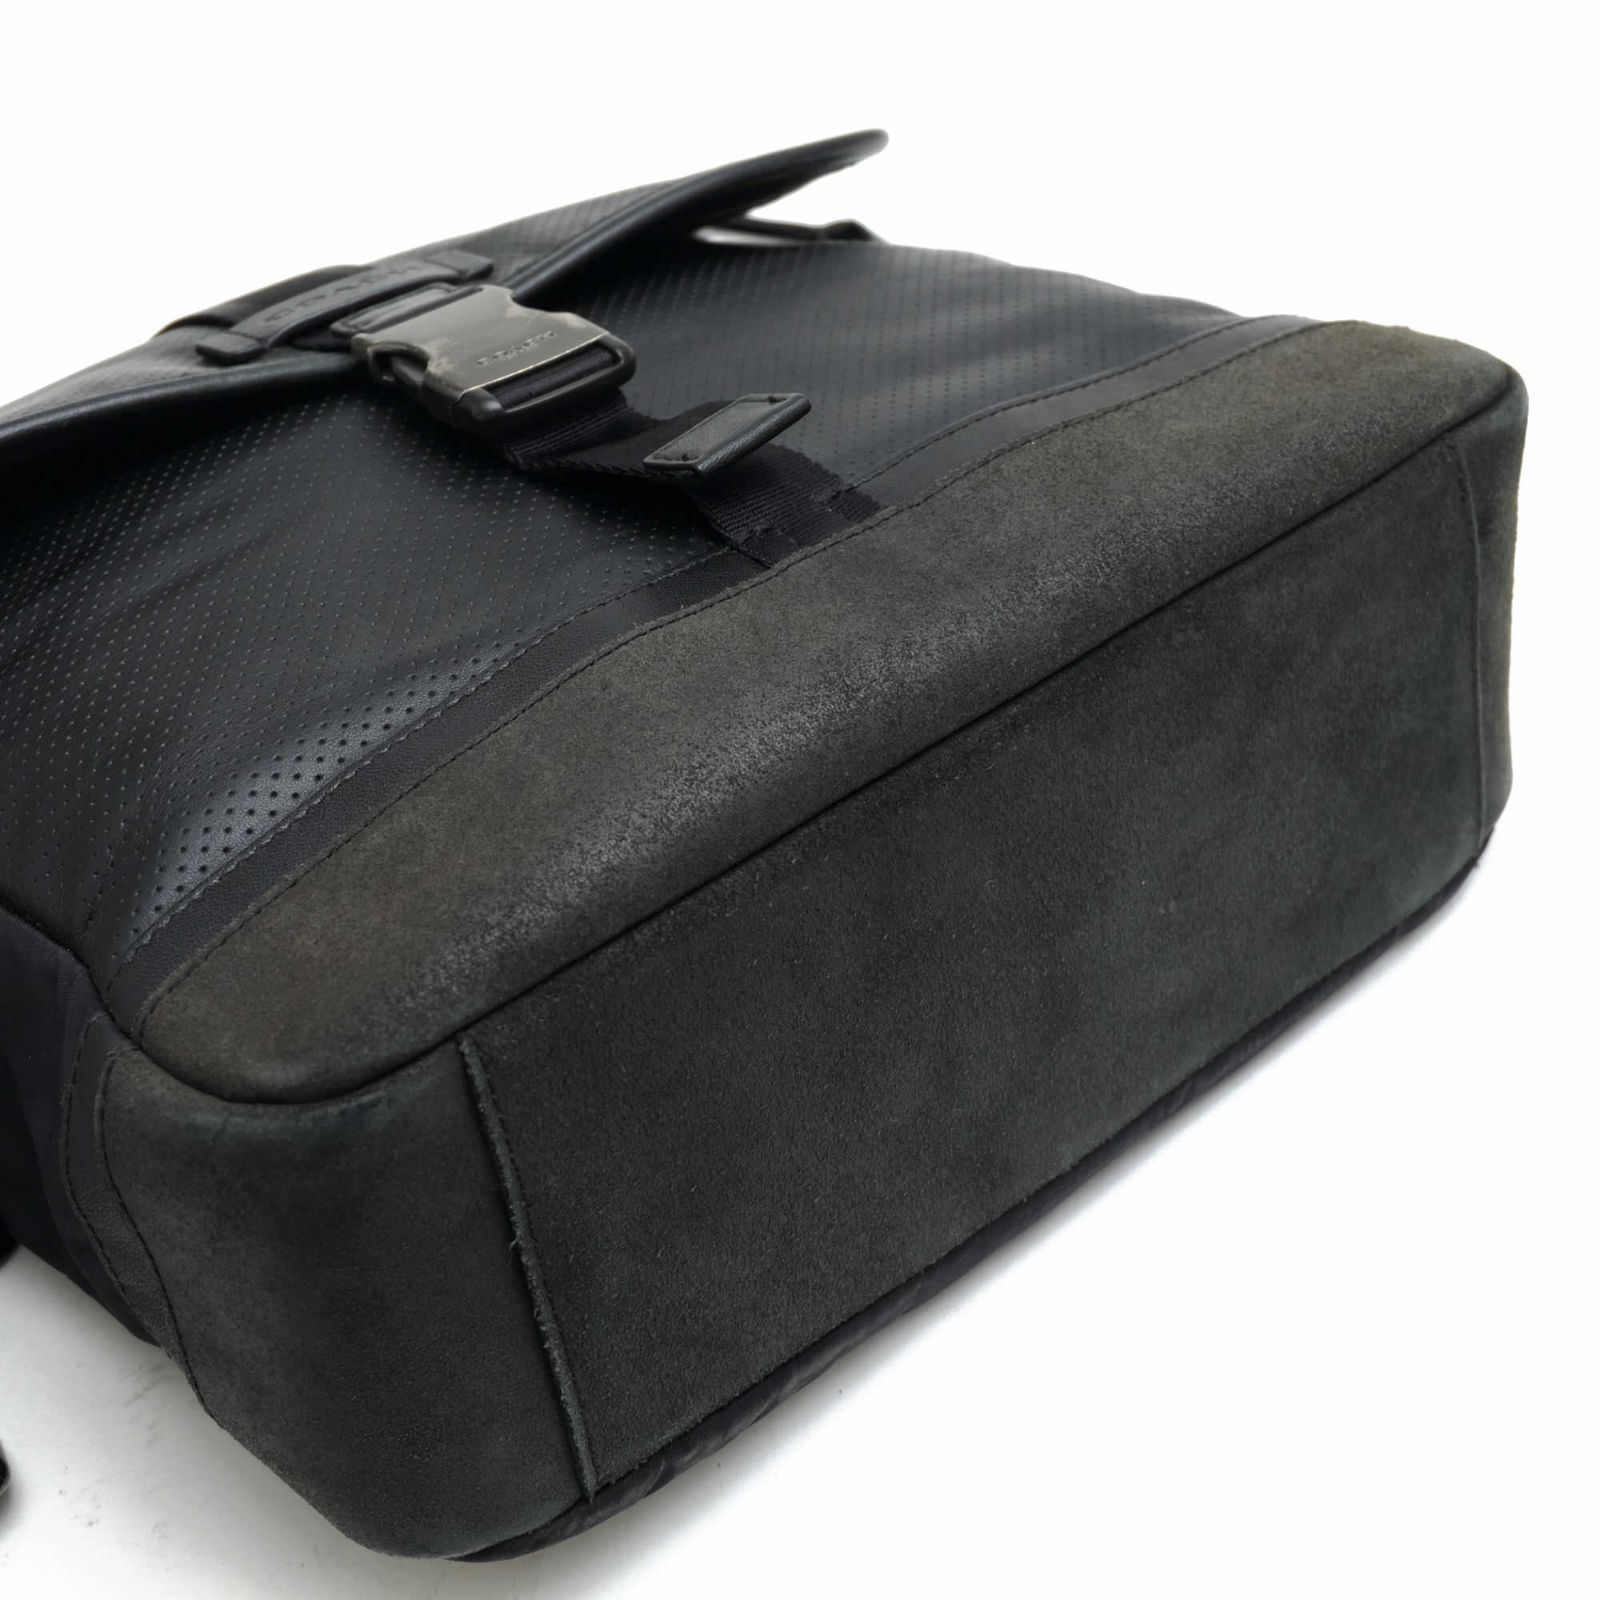 コーチ／COACH バッグ ショルダーバッグ 鞄 メンズ 男性 男性用レザー 革 本革 ブラック 黒  F71552 Varick Map Bag In Leather ヴァリック パフォレイテッド レザー マップ バッグ フラップ式 メッセンジャーバッグ